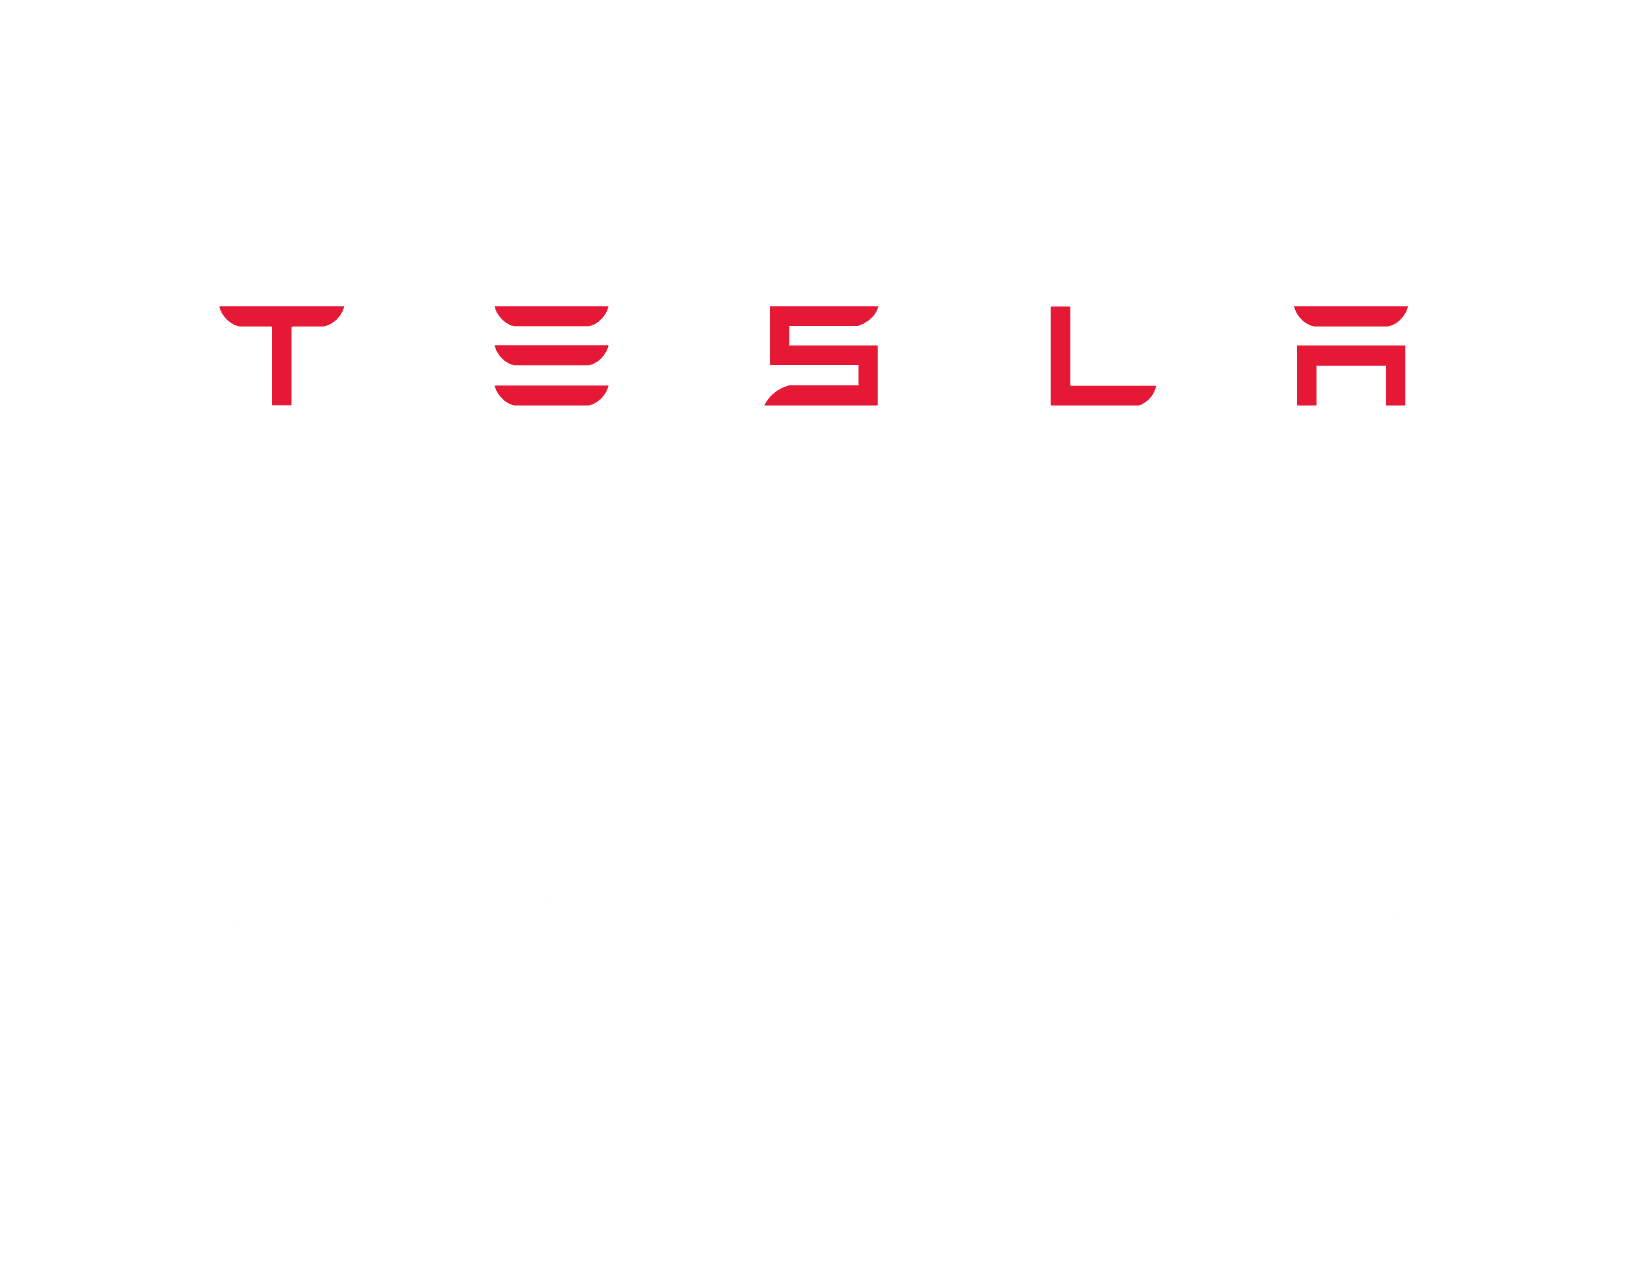 Tesla energy reseller